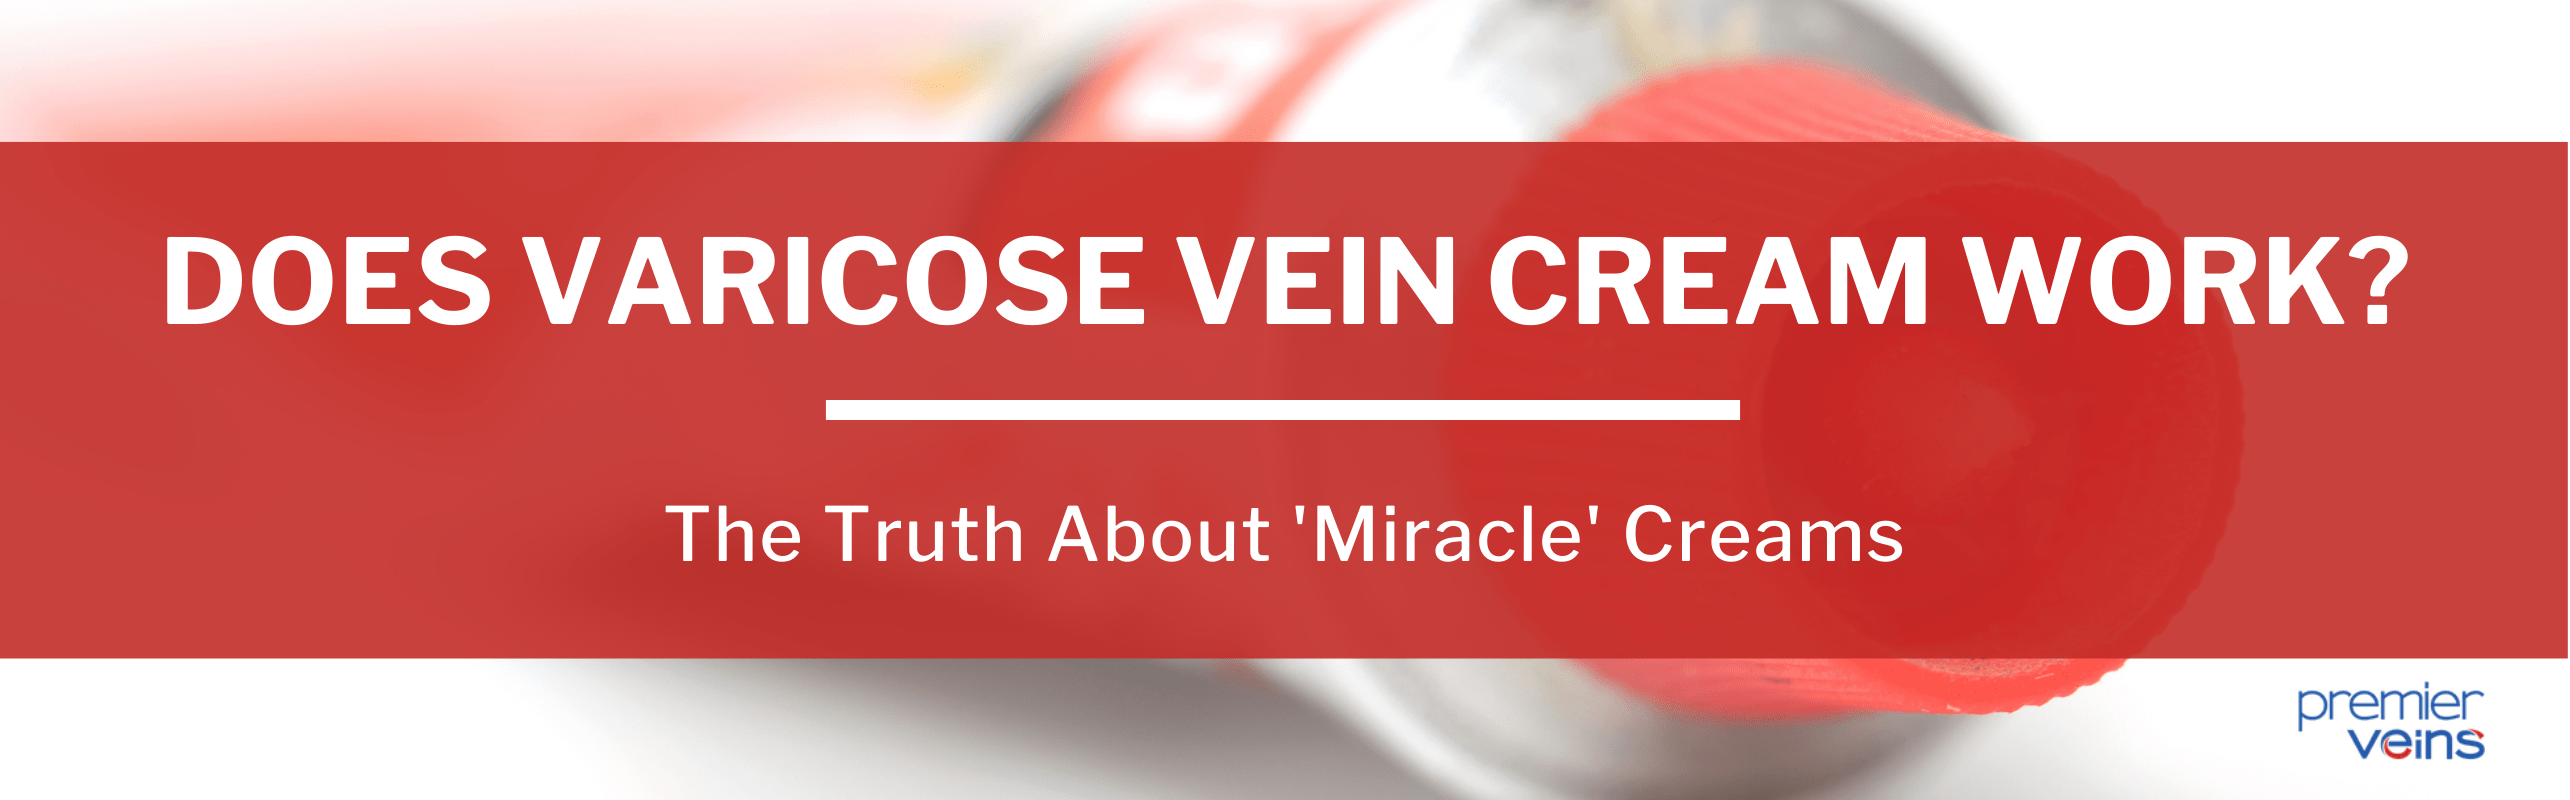 Does varicose vein cream work?